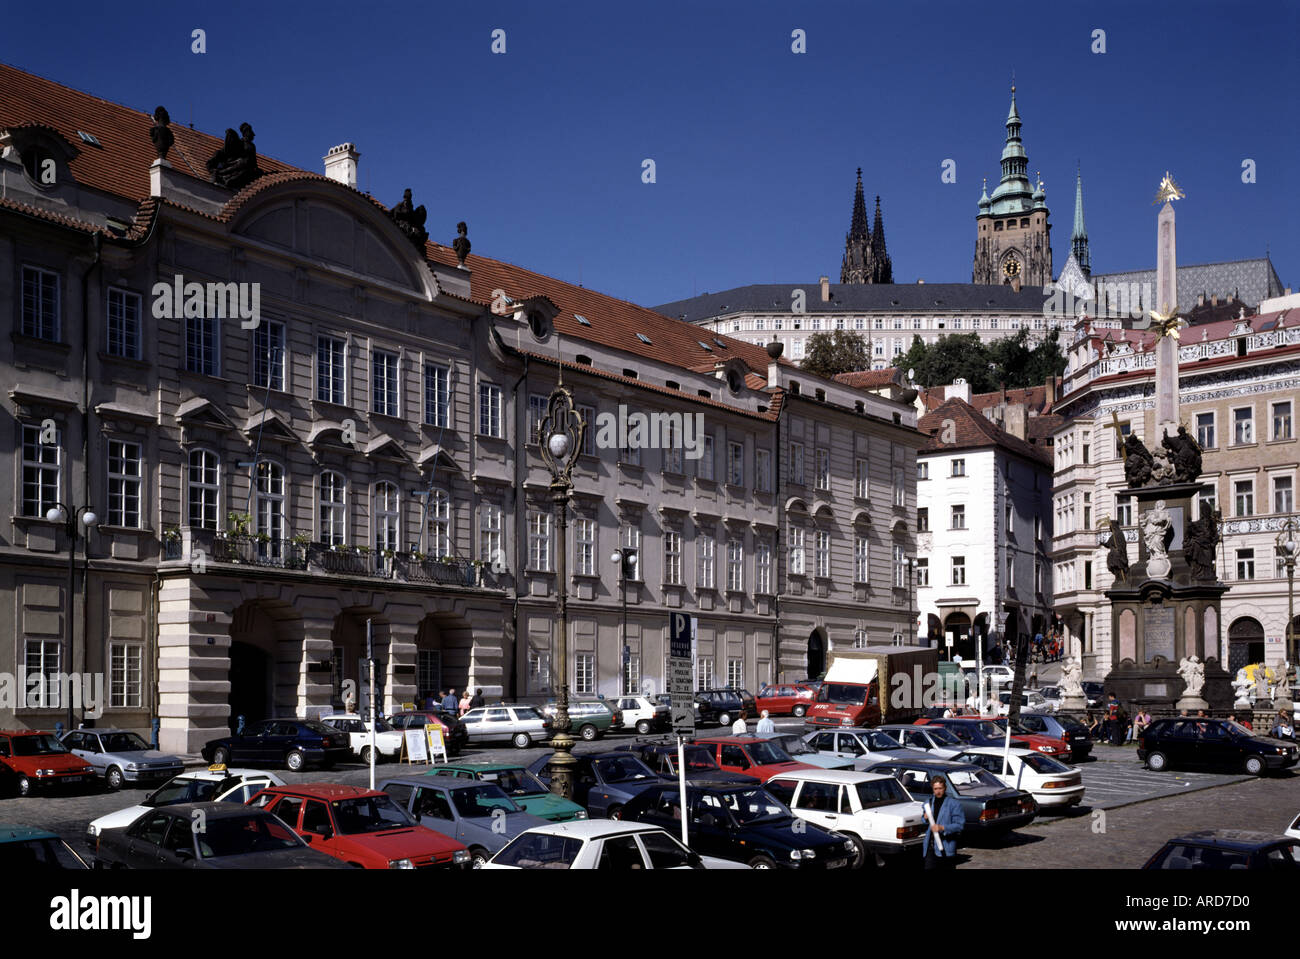 Prag, Palais Liechtenstein, Kleinseitner Ring Stockfotografie - Alamy